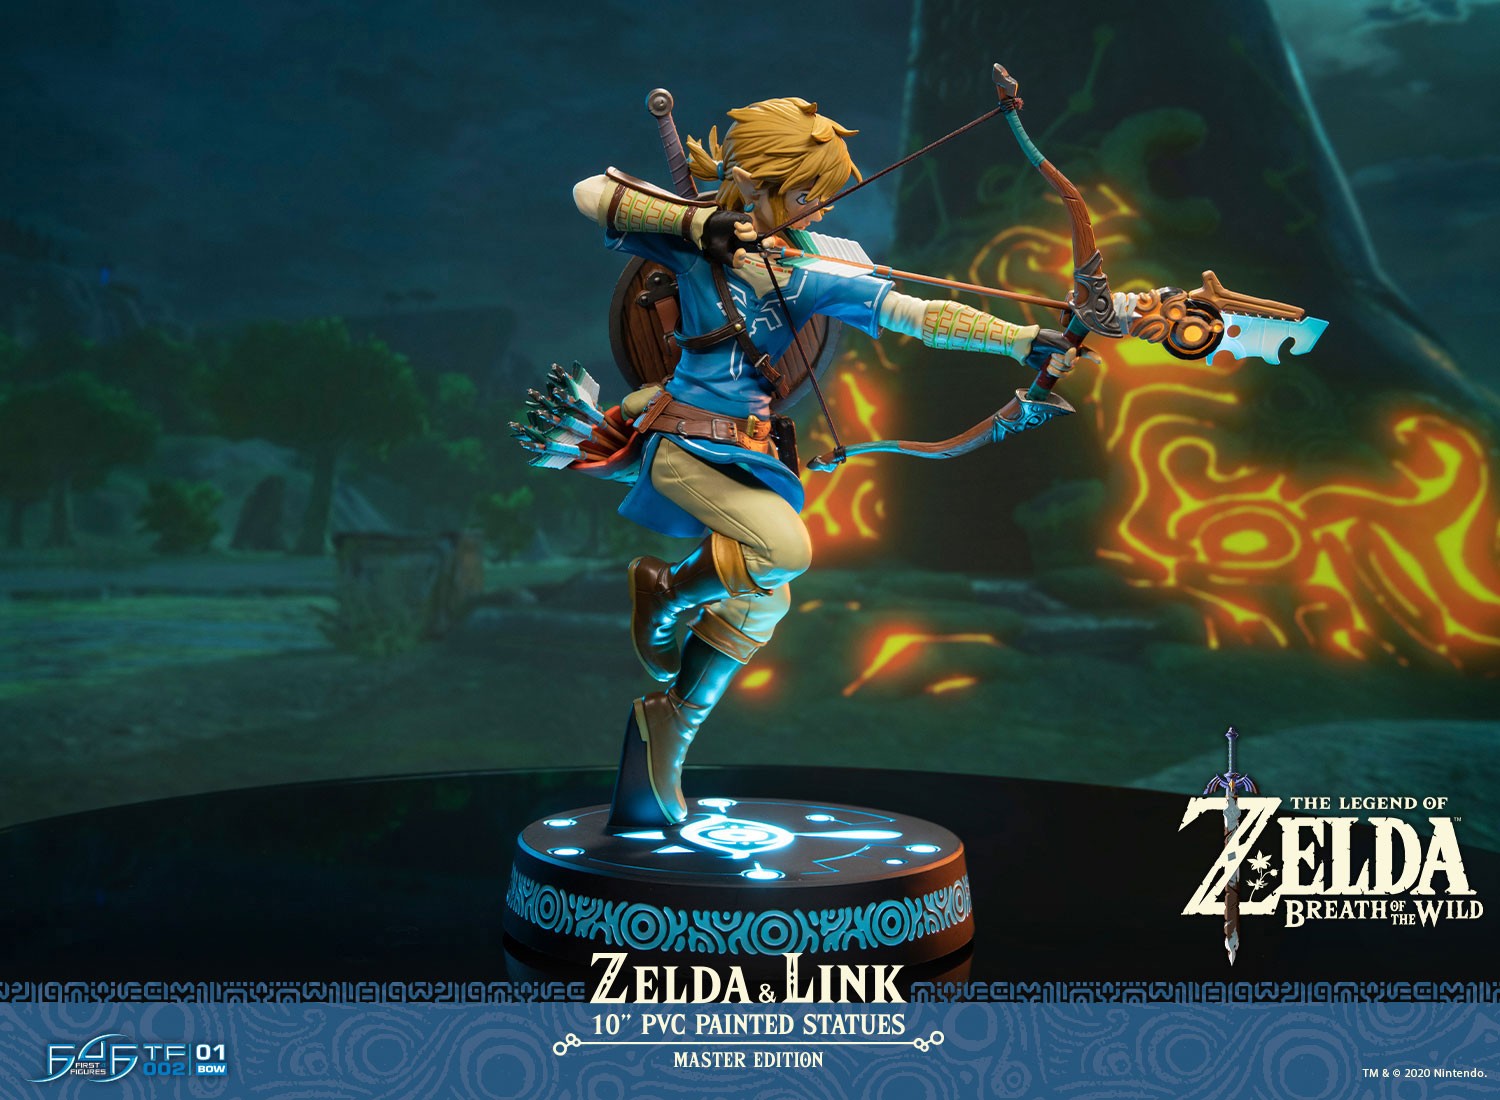 Breath Of The Wild - Link, The Legend Of Zelda Statue